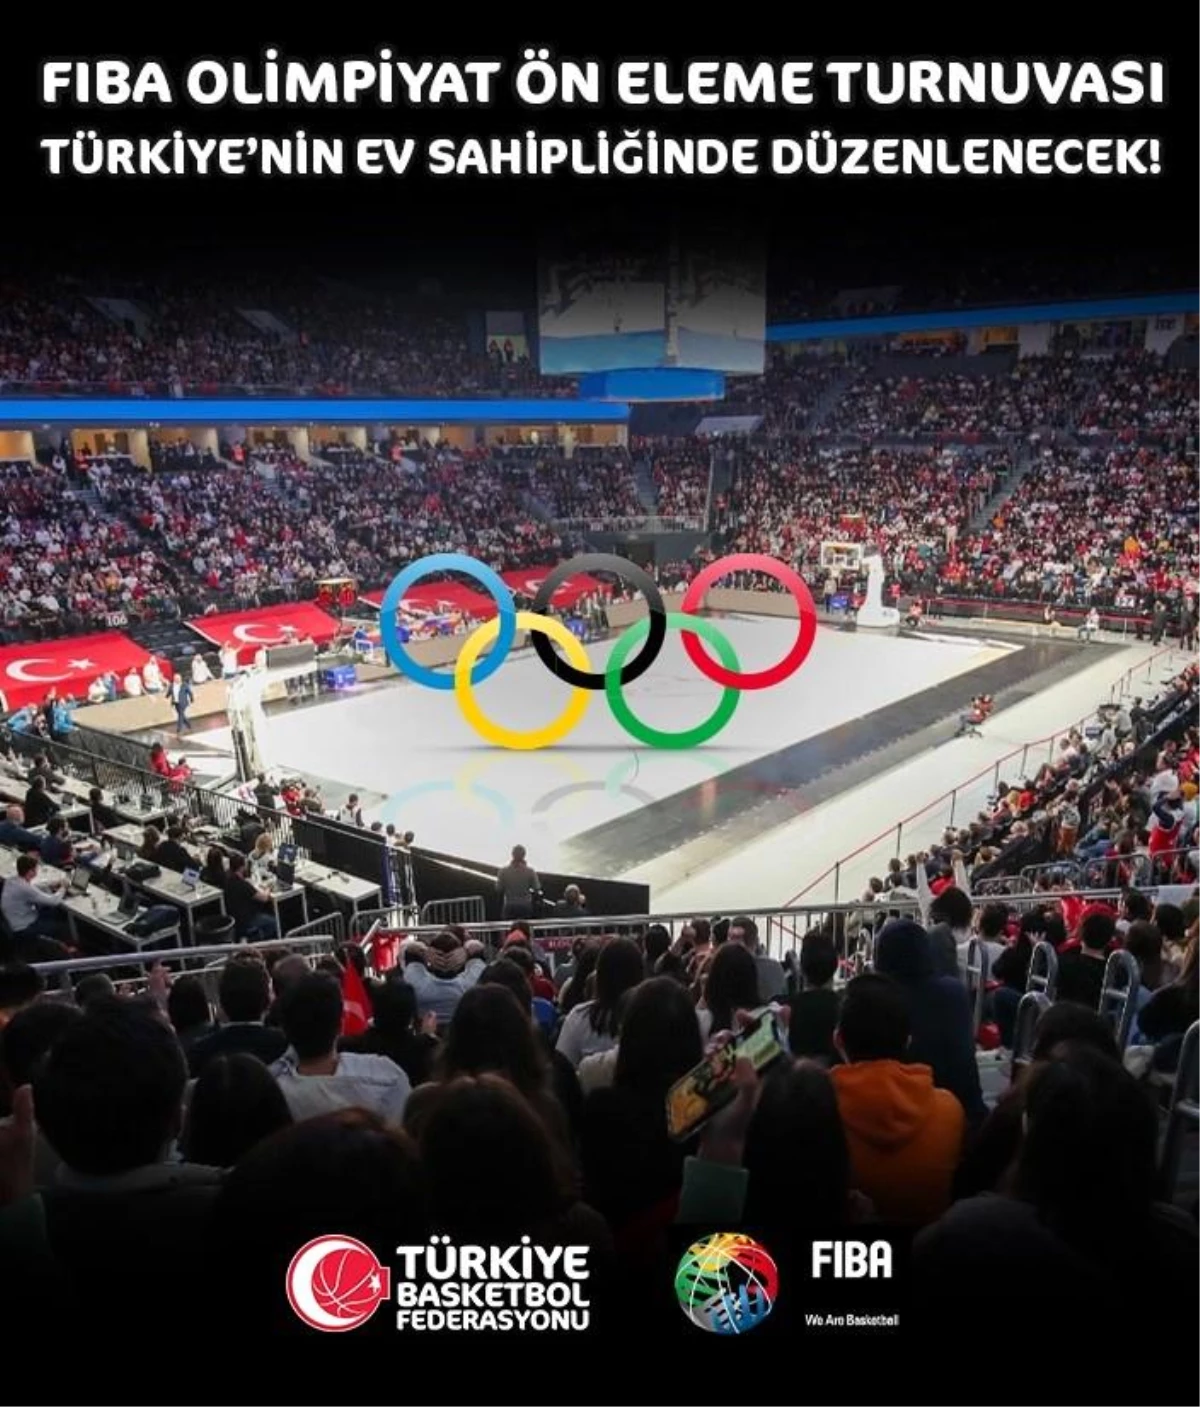 İstanbul, FIBA Olimpiyat Ön Eleme Turnuvasına ev sahipliği yapacak